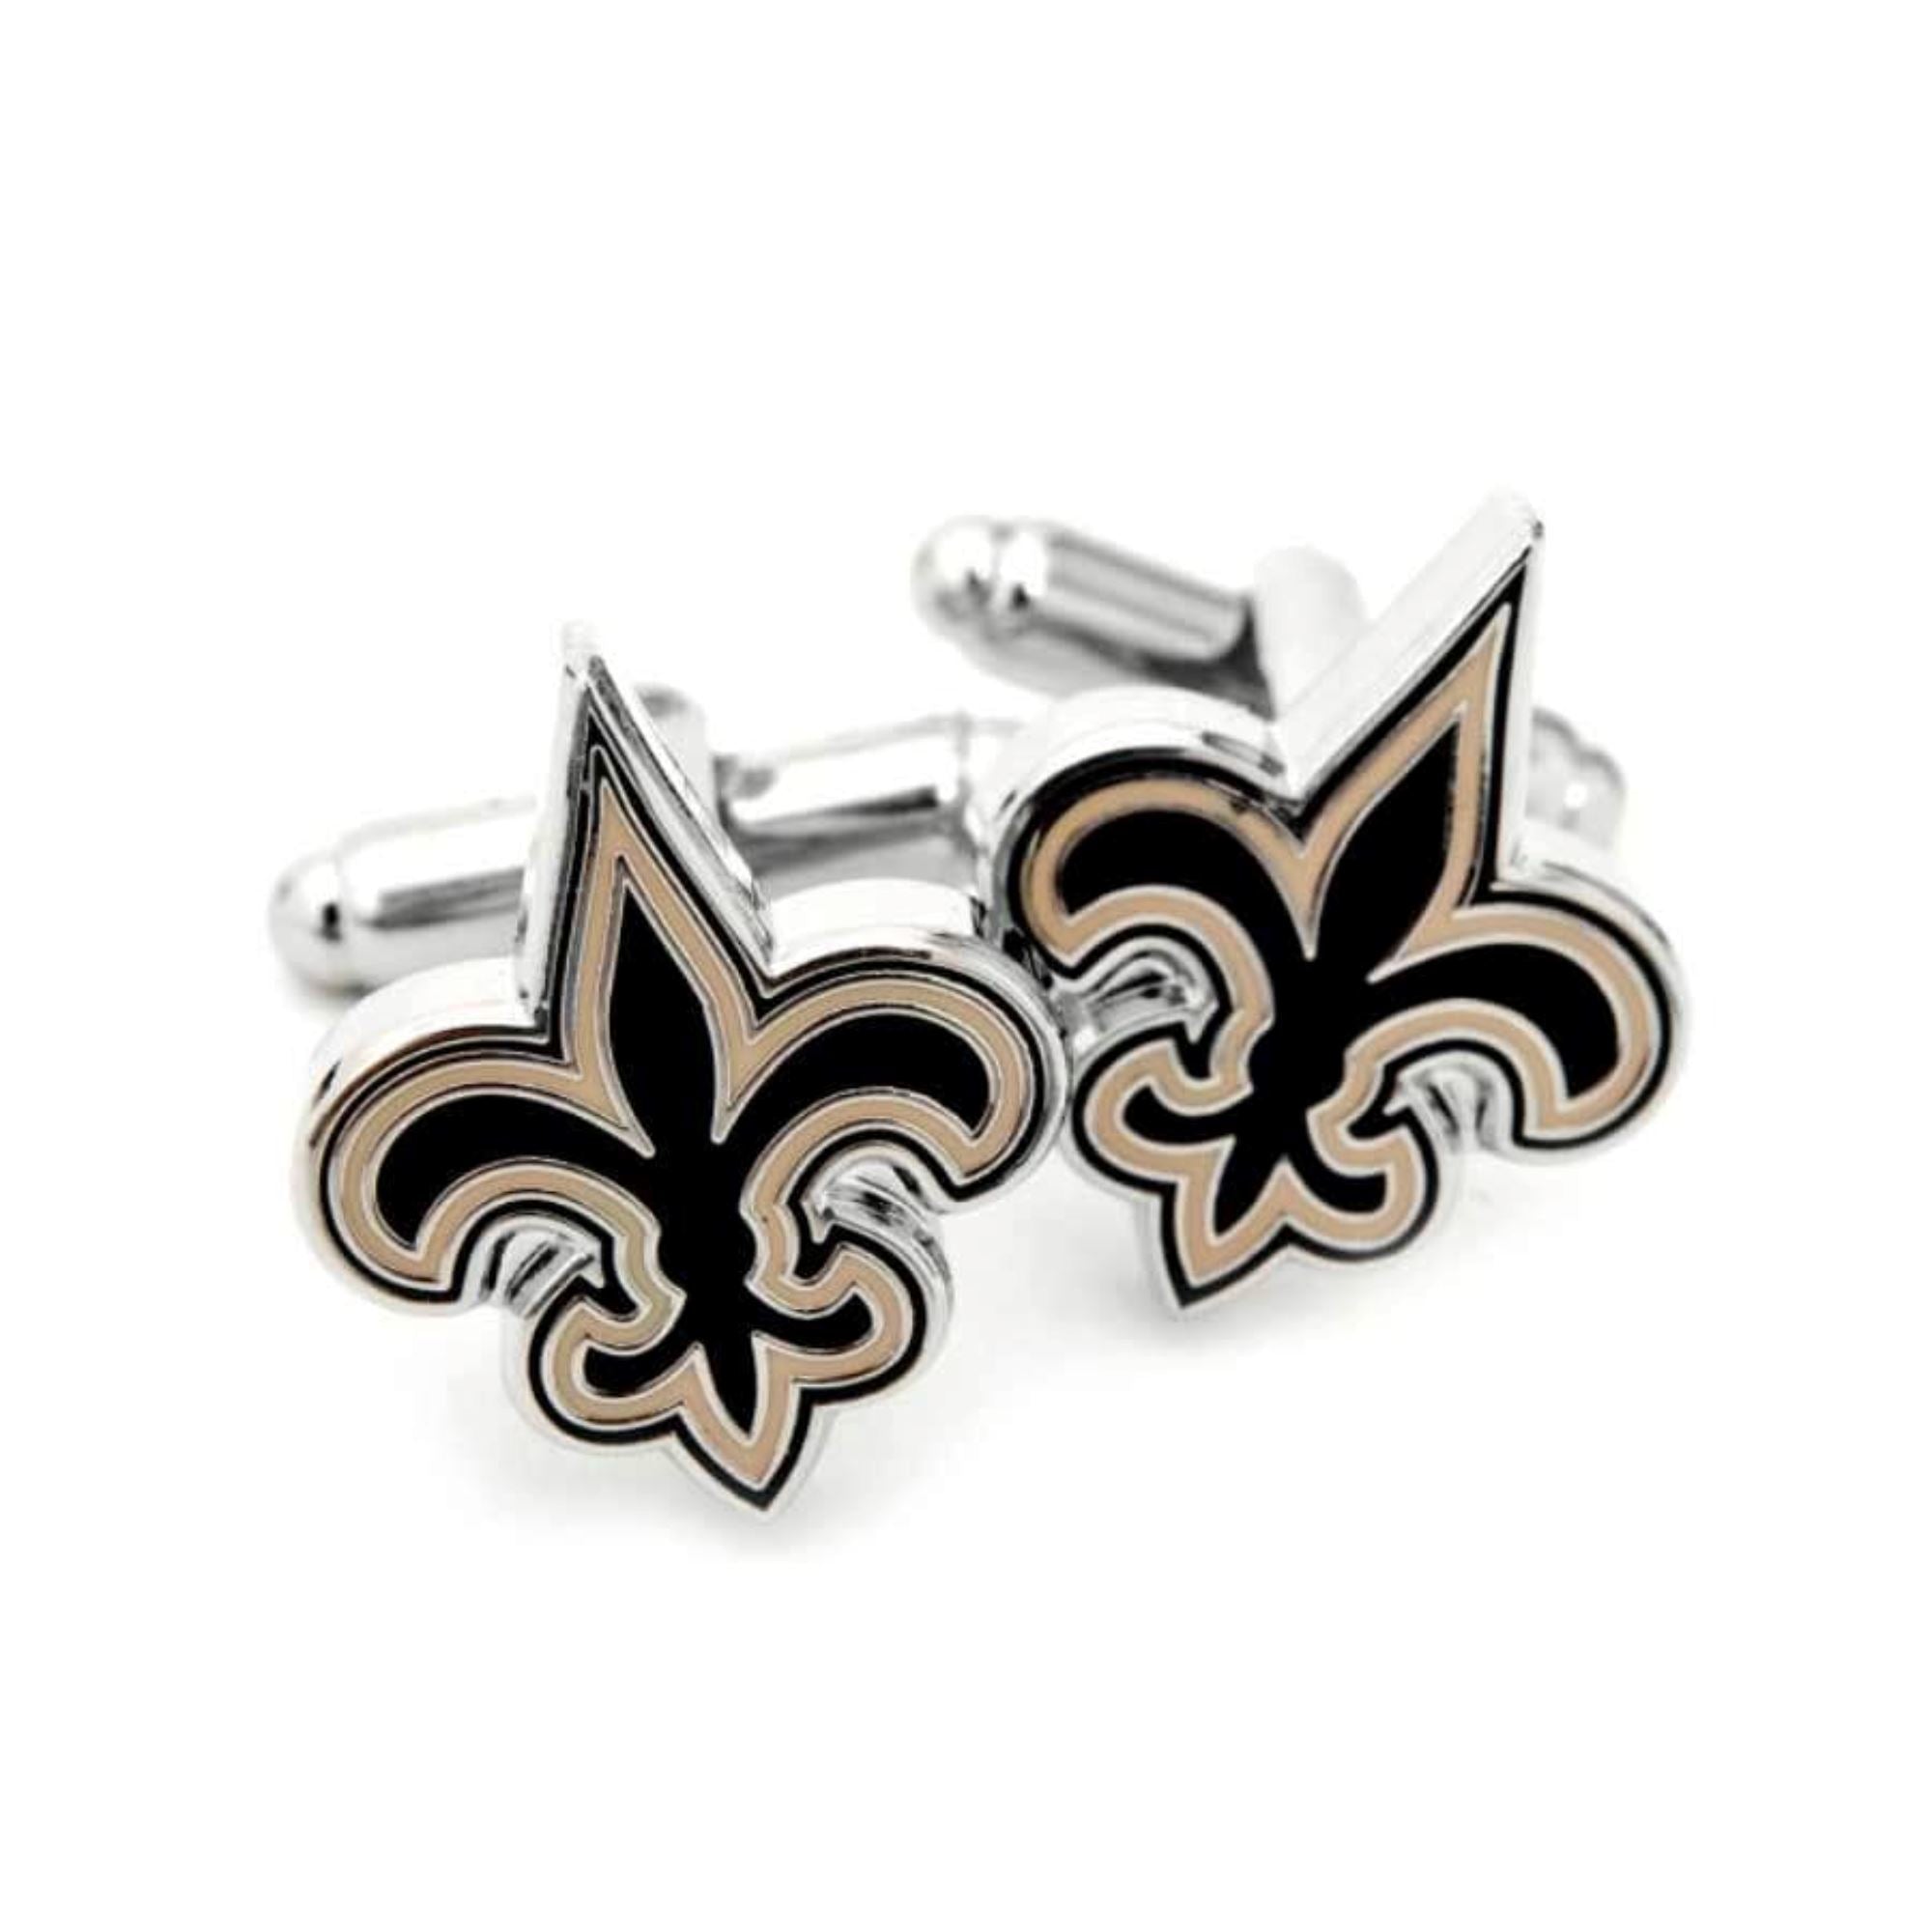 New Orleans Saints Cufflinks Novelty Cufflinks NFL 